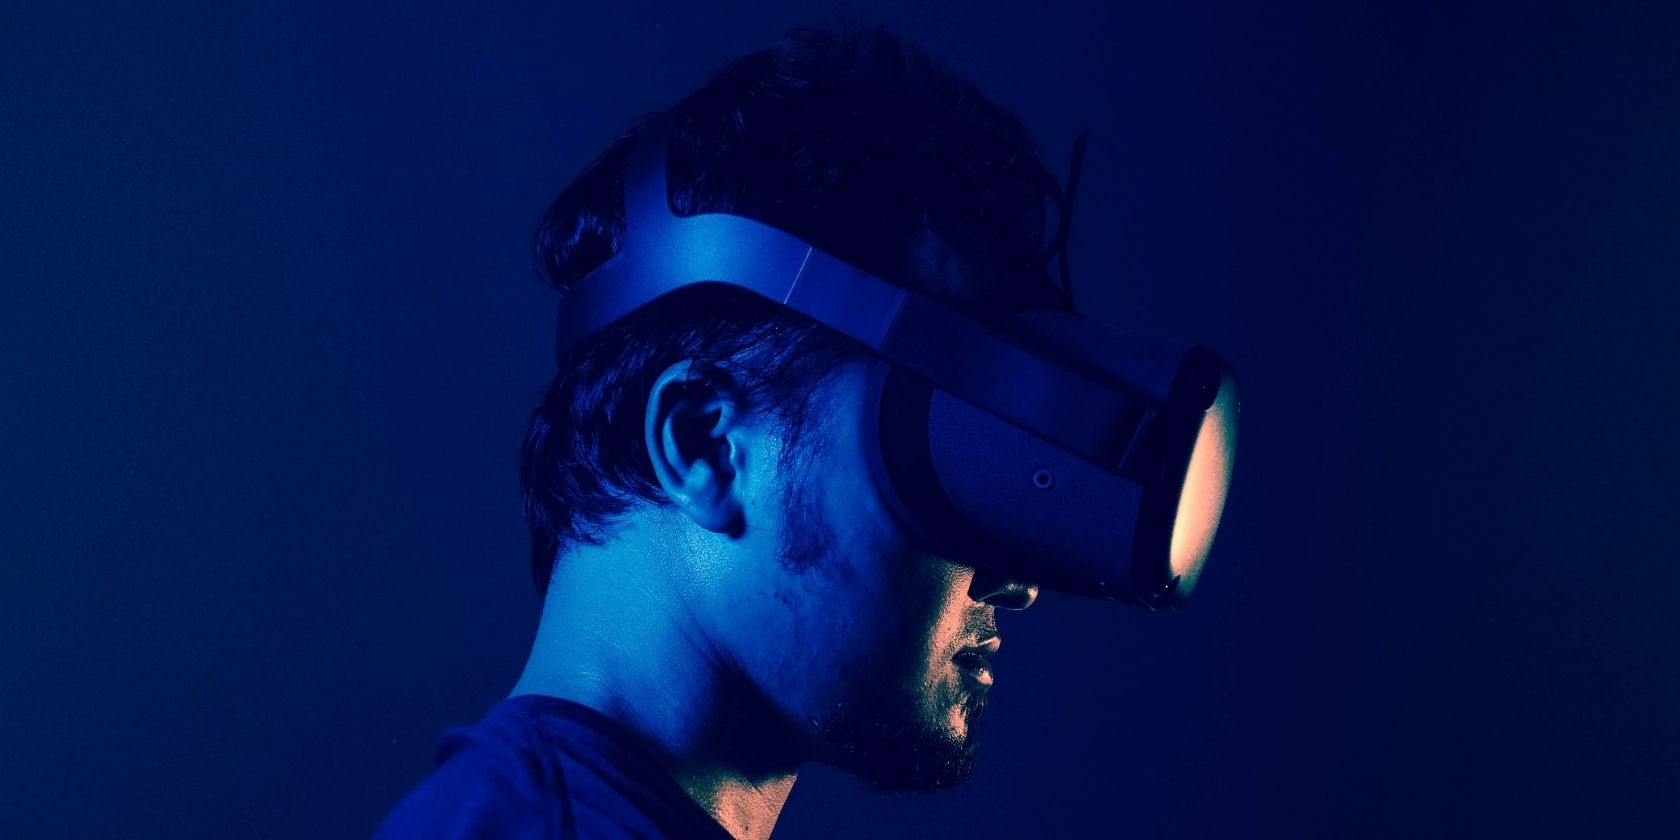 Homem usando óculos de realidade virtual em luz azul.